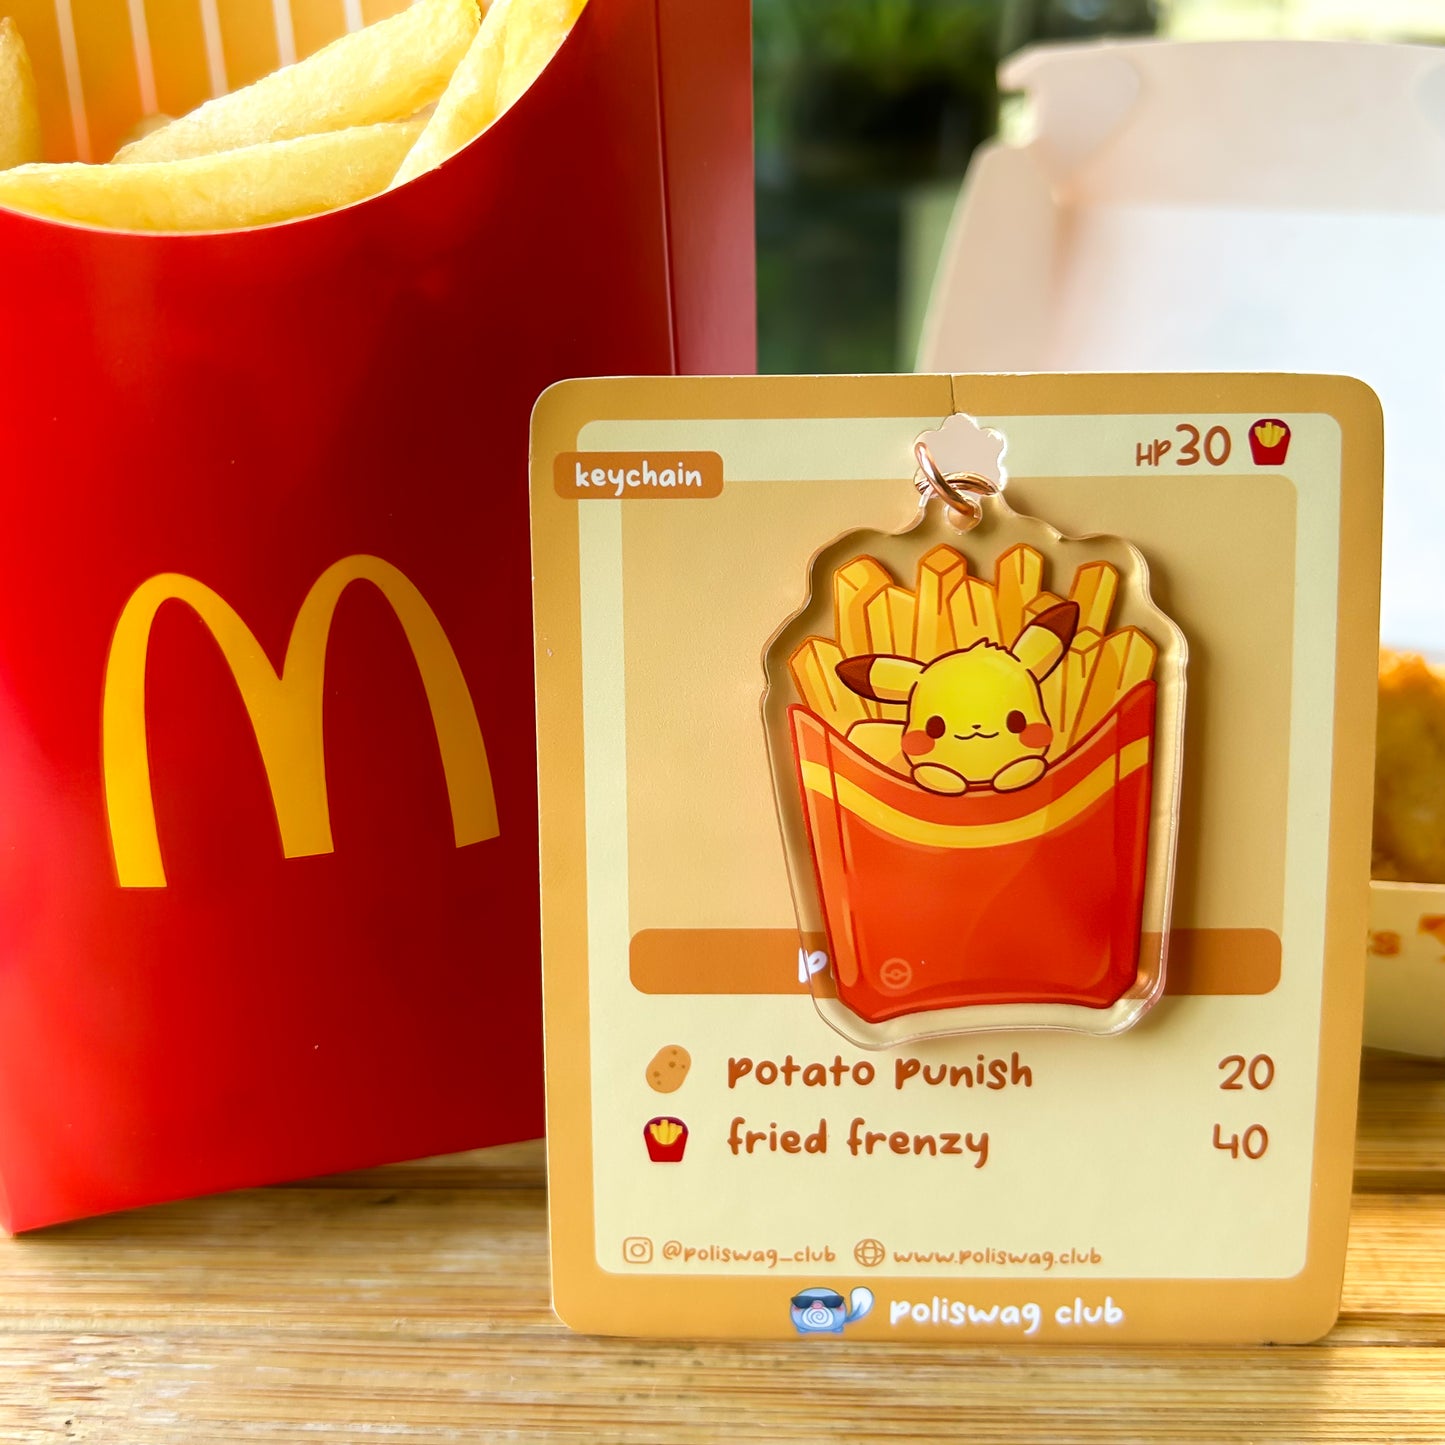 Pikachu Fries Keychain